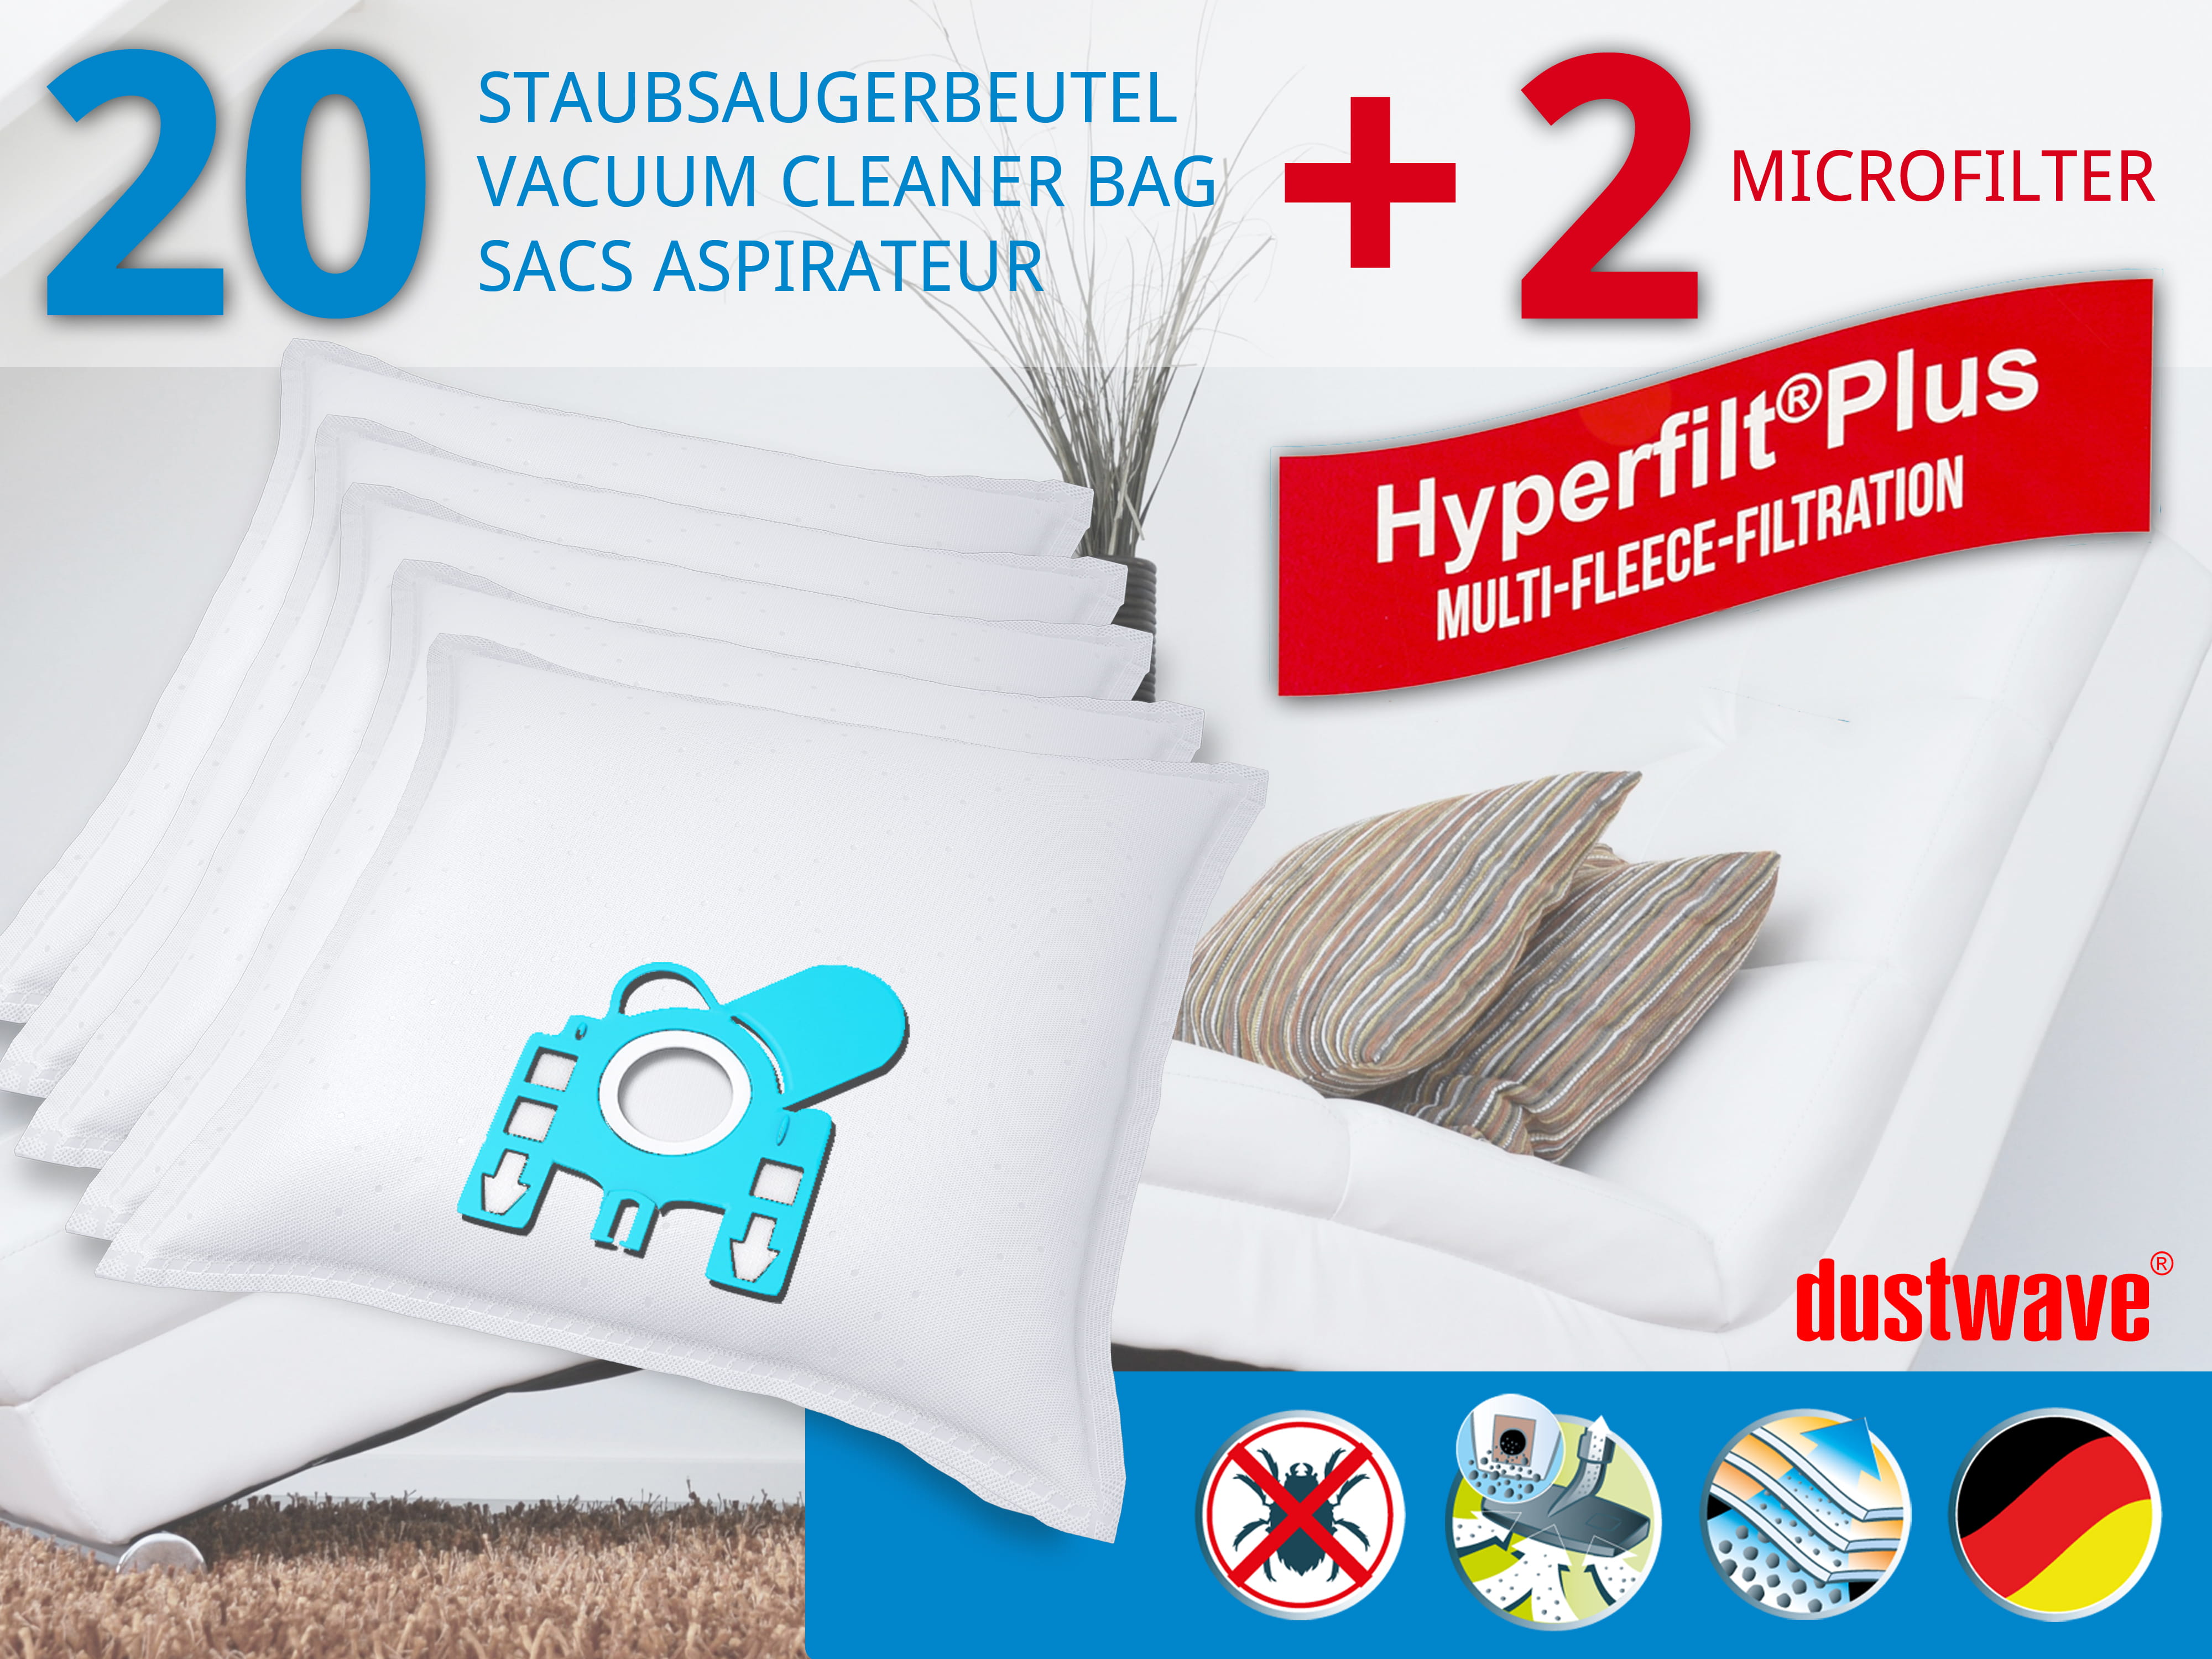 Dustwave® 20 Staubsaugerbeutel für Miele S624 / S 624 - hocheffizient, mehrlagiges Mikrovlies mit Hygieneverschluss - Made in Germany